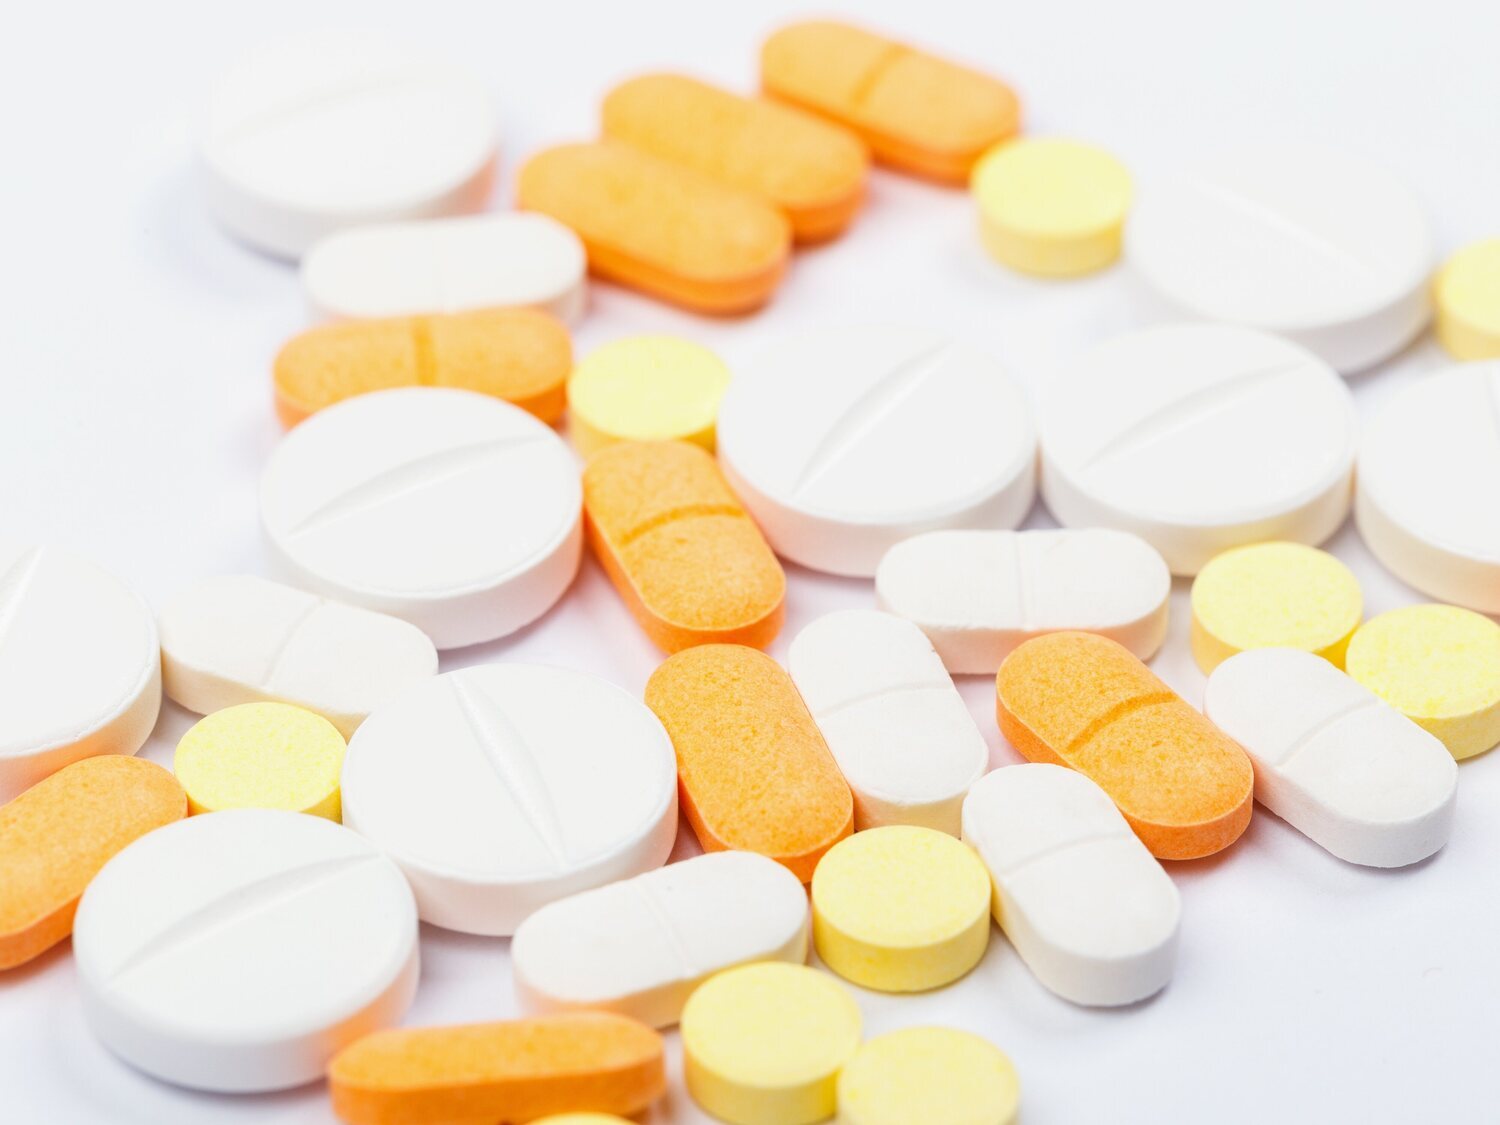 Alerta sanitaria en España: retiran de la venta este medicamento de todas las farmacias y piden evitar su uso